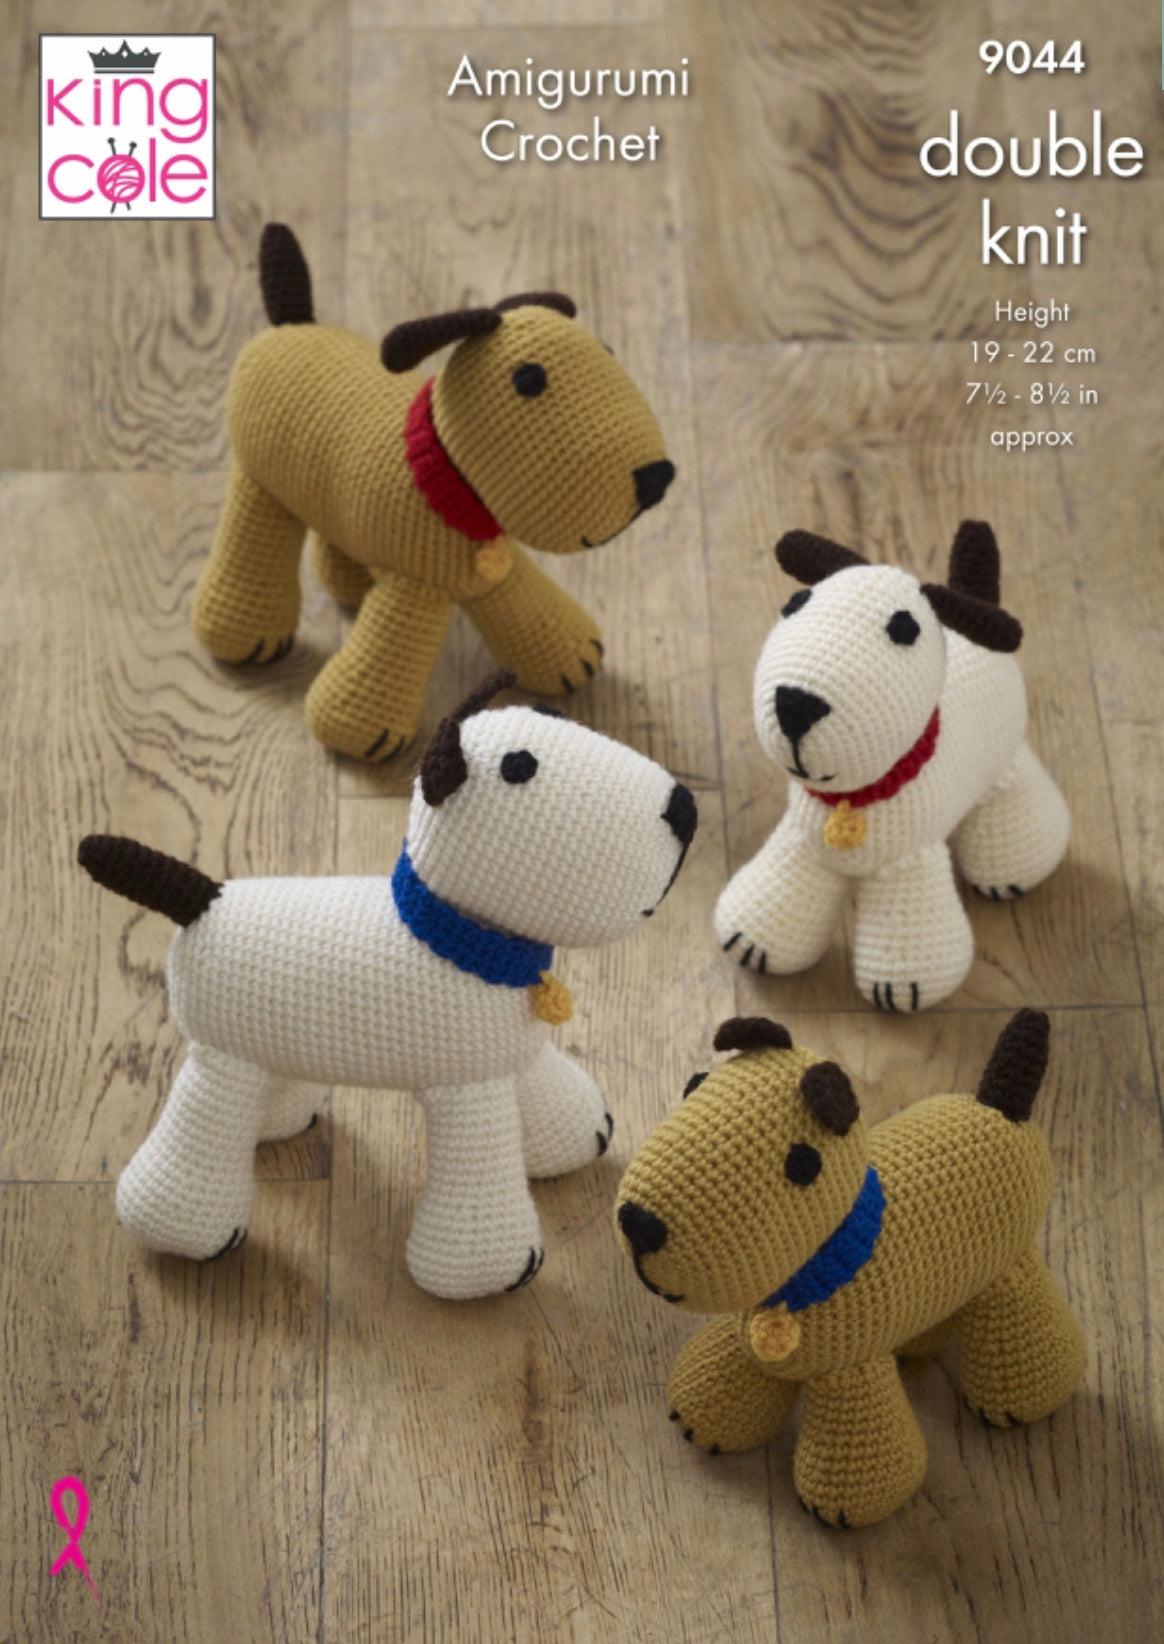 King Cole Pattern 9044 Crocheted Dogs in Merino Blend DK